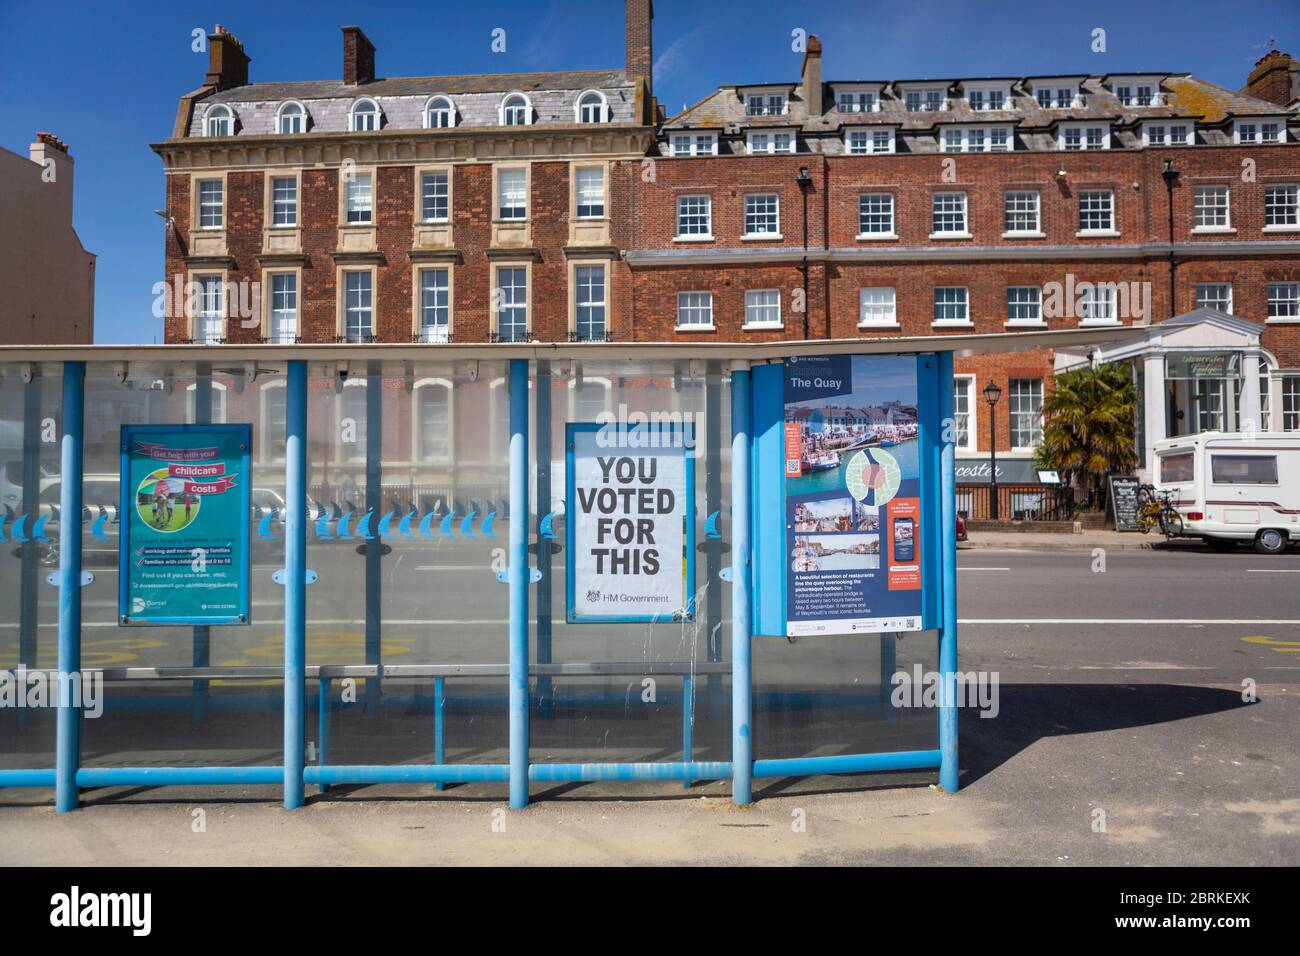 Wofür abgestimmt? Ein kryptisches Plakat auf einem Busshutzer in Weymouth, Dorset heute. Coronavirus, covid19. Bilddatum Mittwoch, 20. Mai 2020. Stockfoto